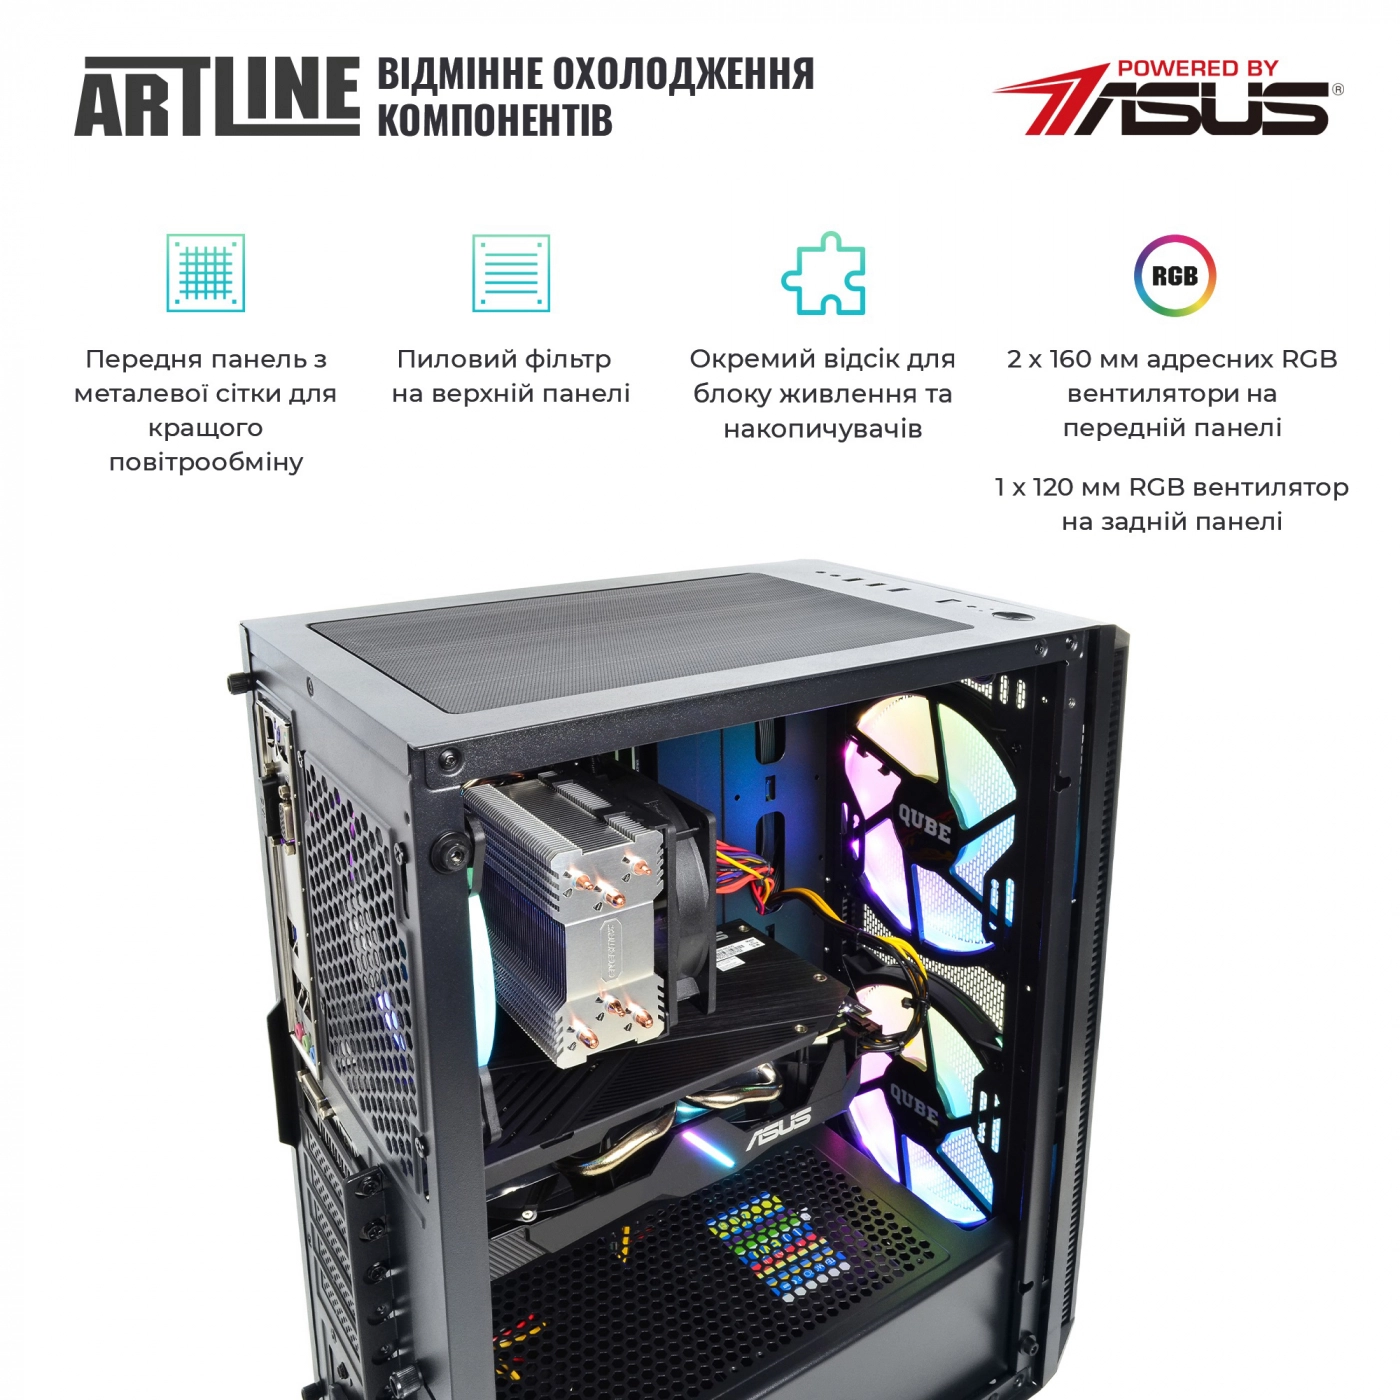 Купить Компьютер ARTLINE Gaming X65v38 - фото 2